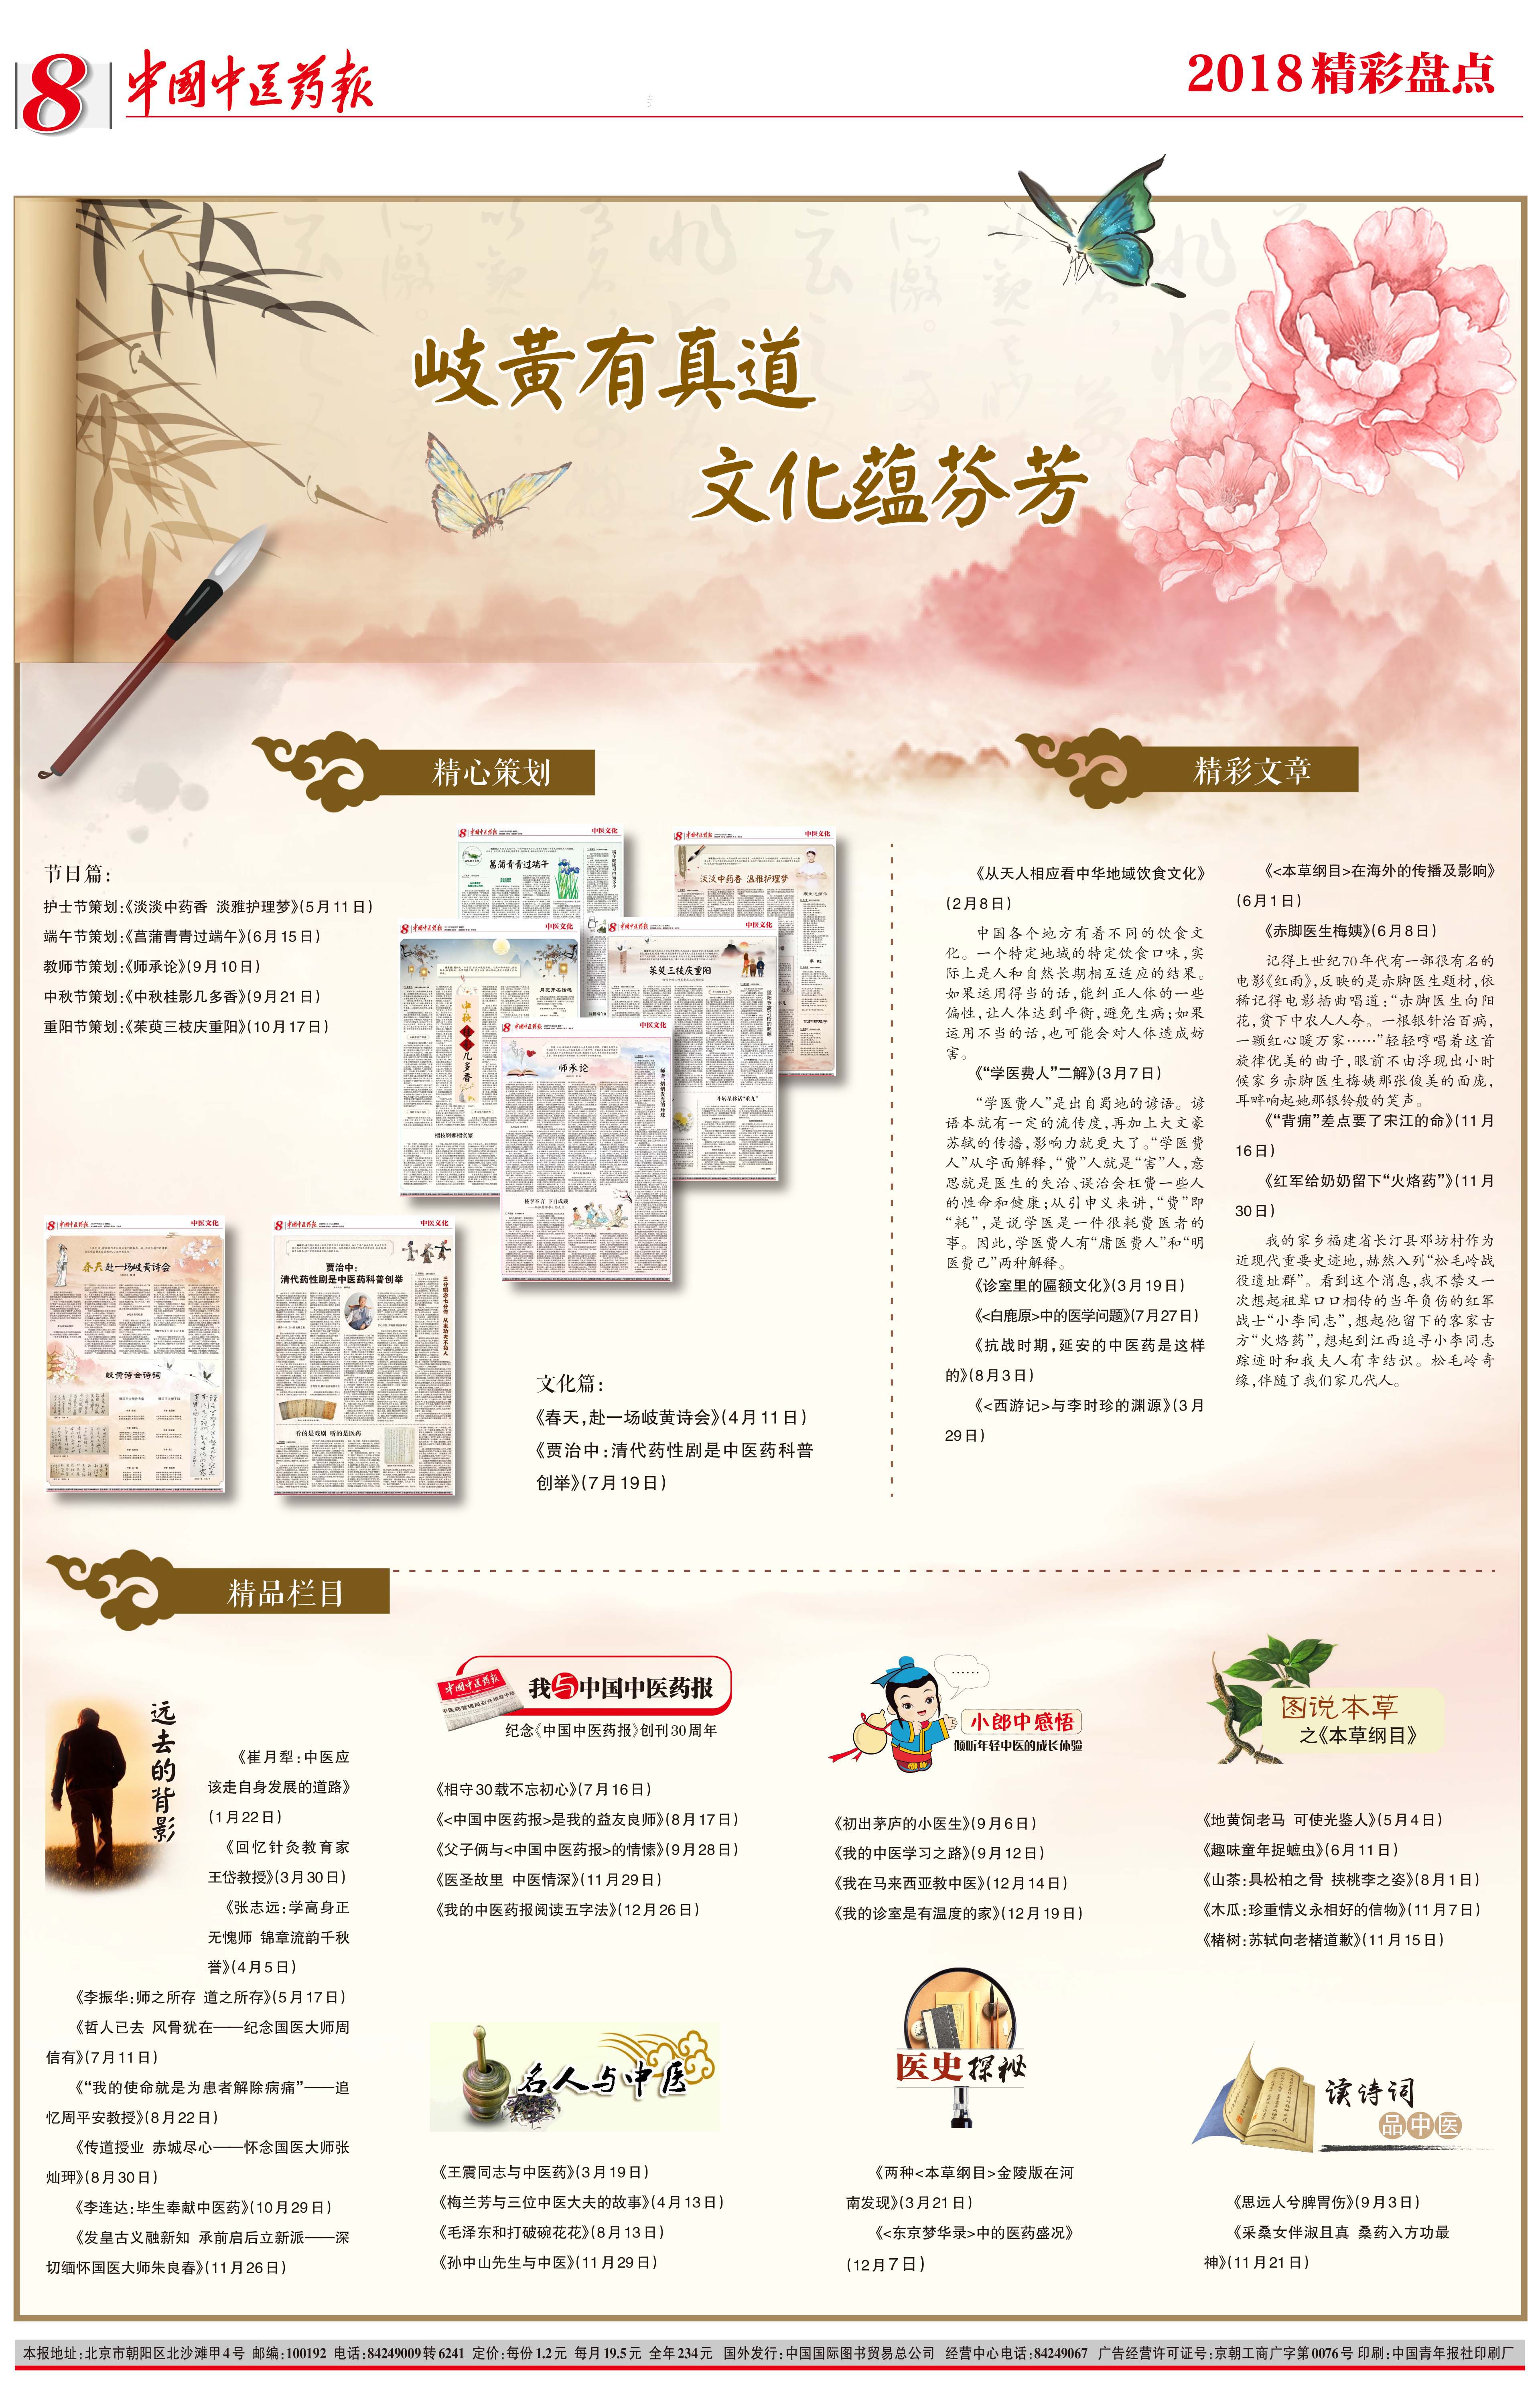 报纸排版设计北京/平面设计师/4年前/455浏览绛树两歌